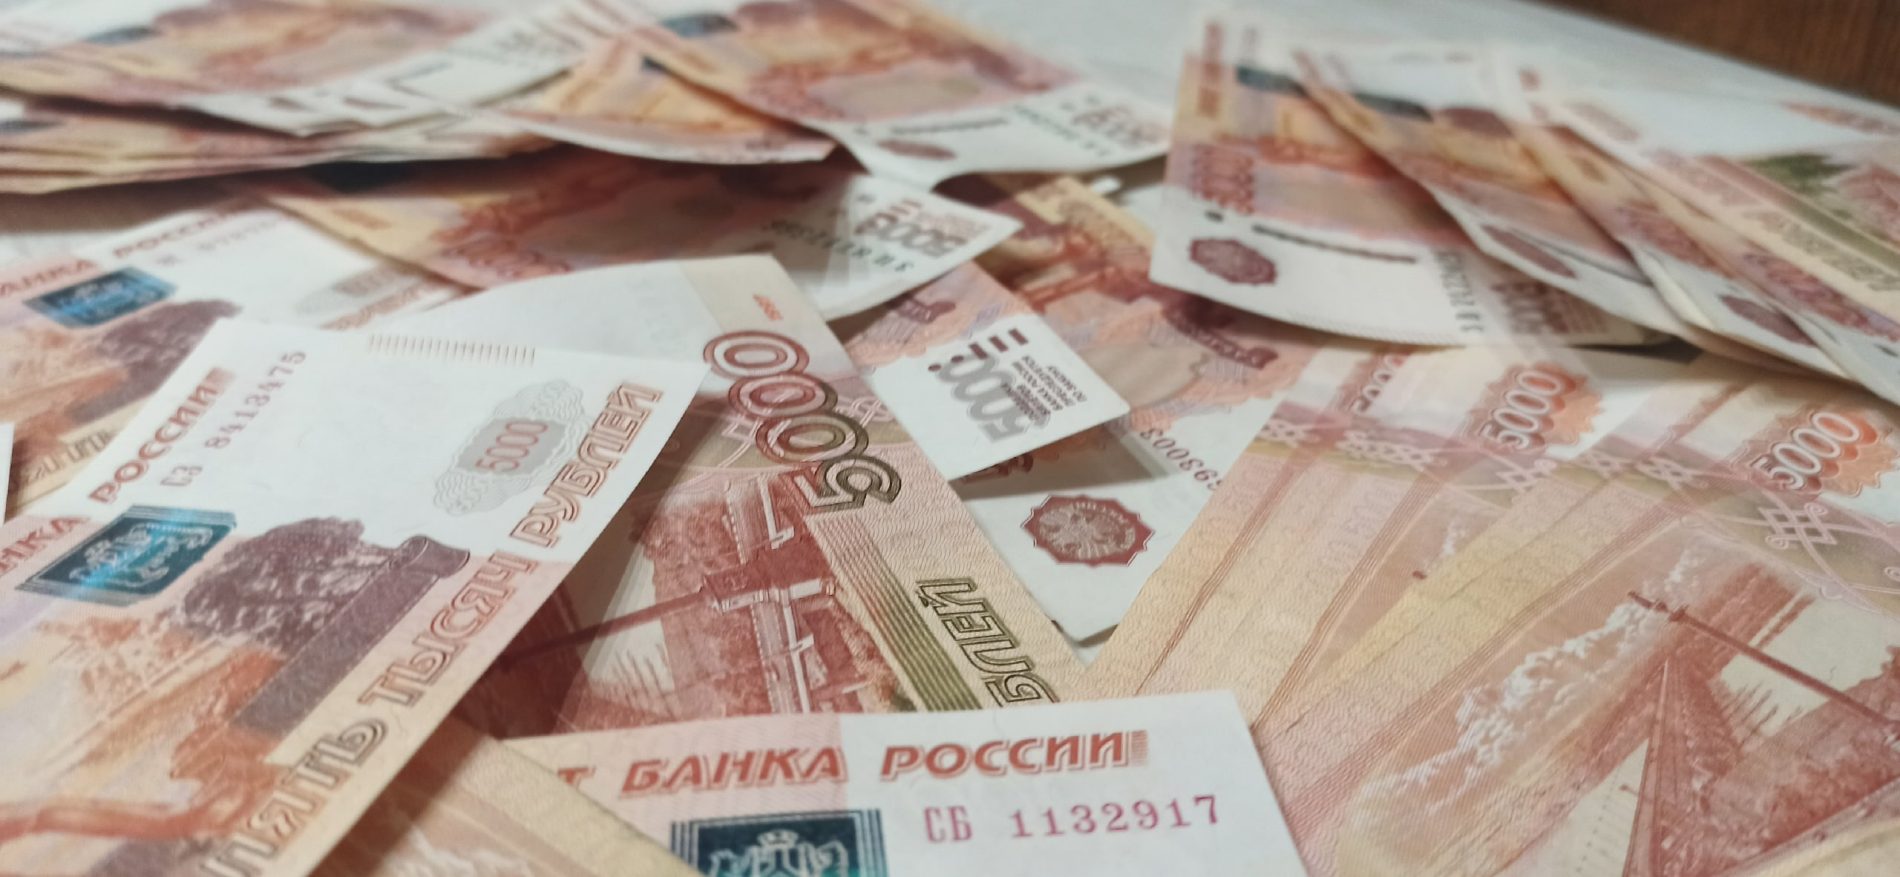 Полгода не платили зарплату работникам предприятия под Костромой